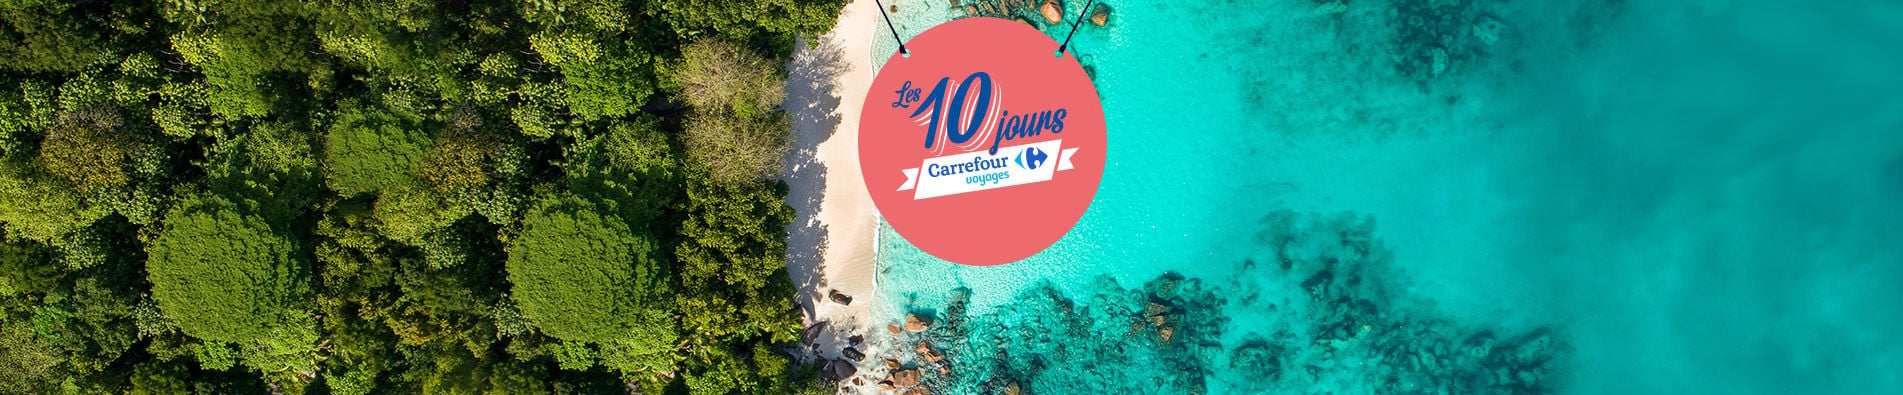 Les 10 jours Carrefour Voyages